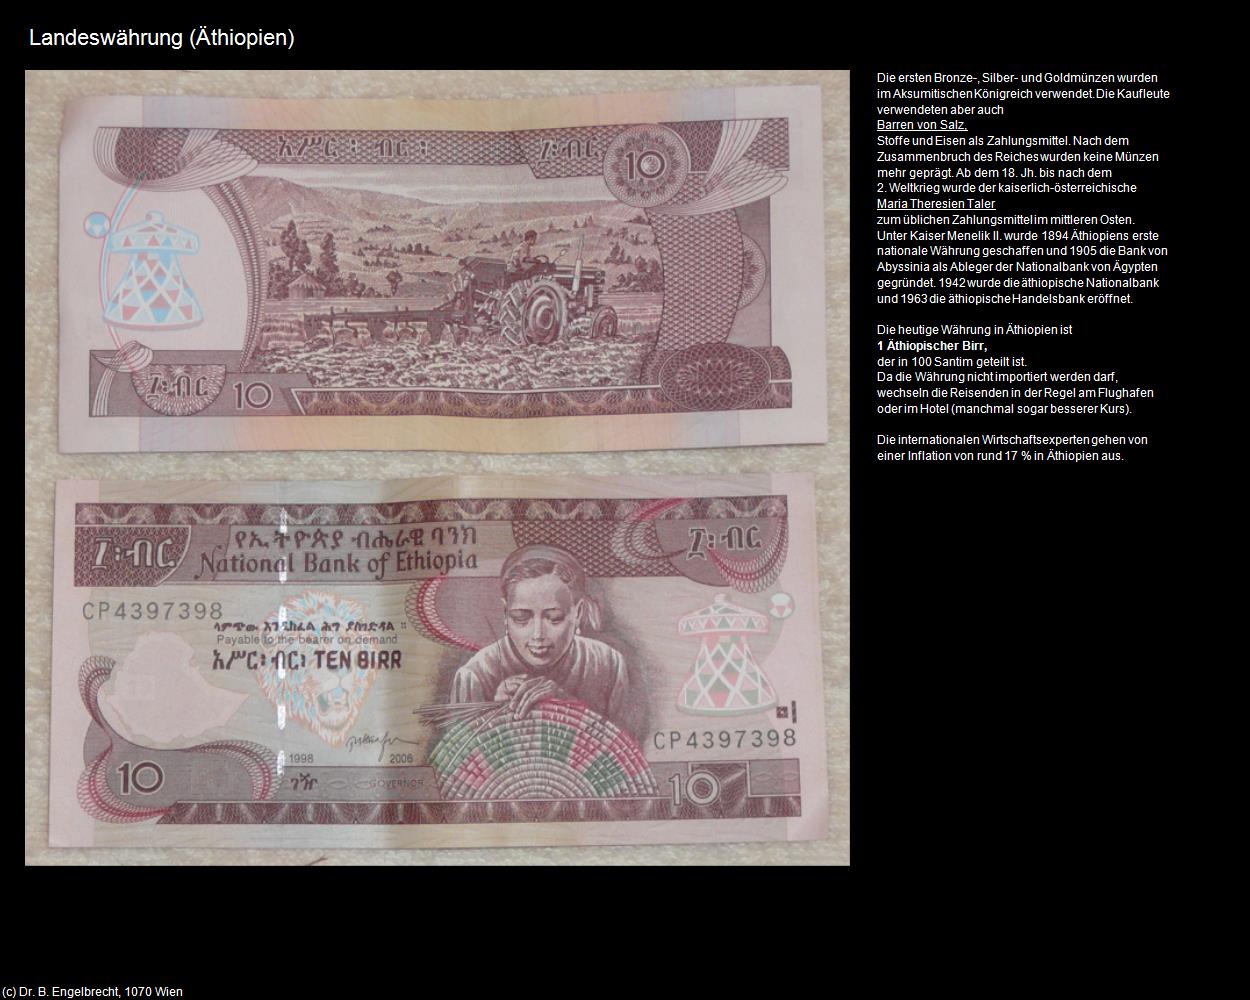 Landeswährung (+Allgemein) in Äthiopien(c)B.Engelbrecht